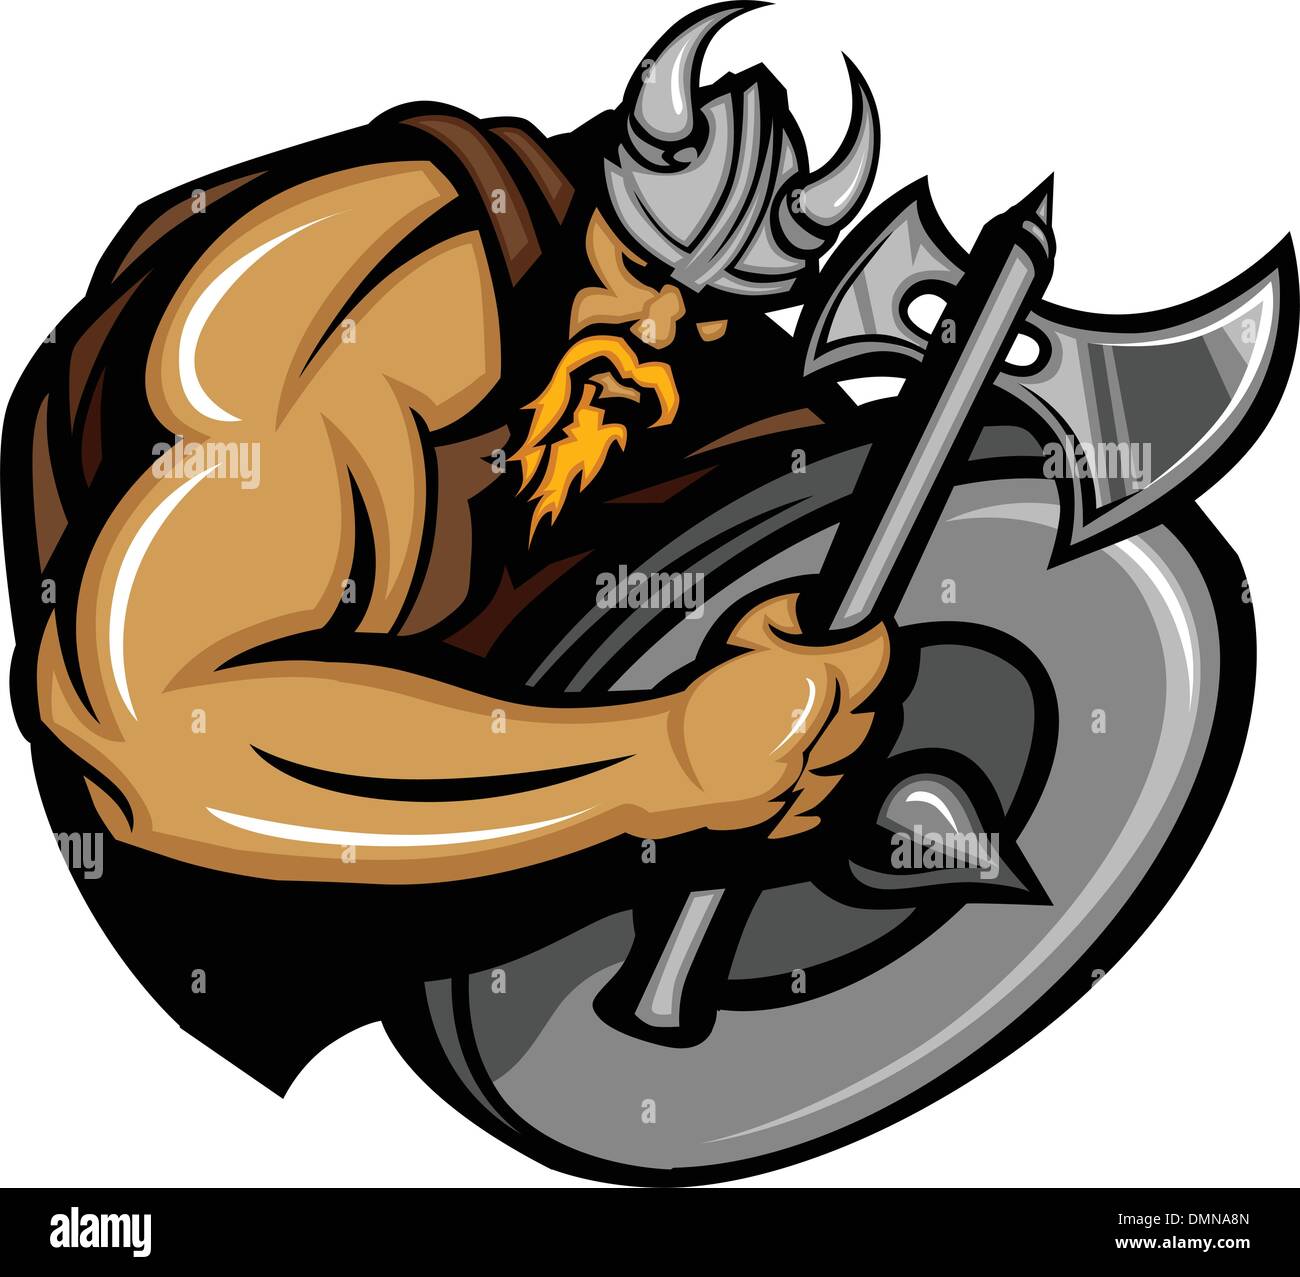 Mascota Norseman vikingo con hacha y escudo de dibujos animados Ilustración del Vector